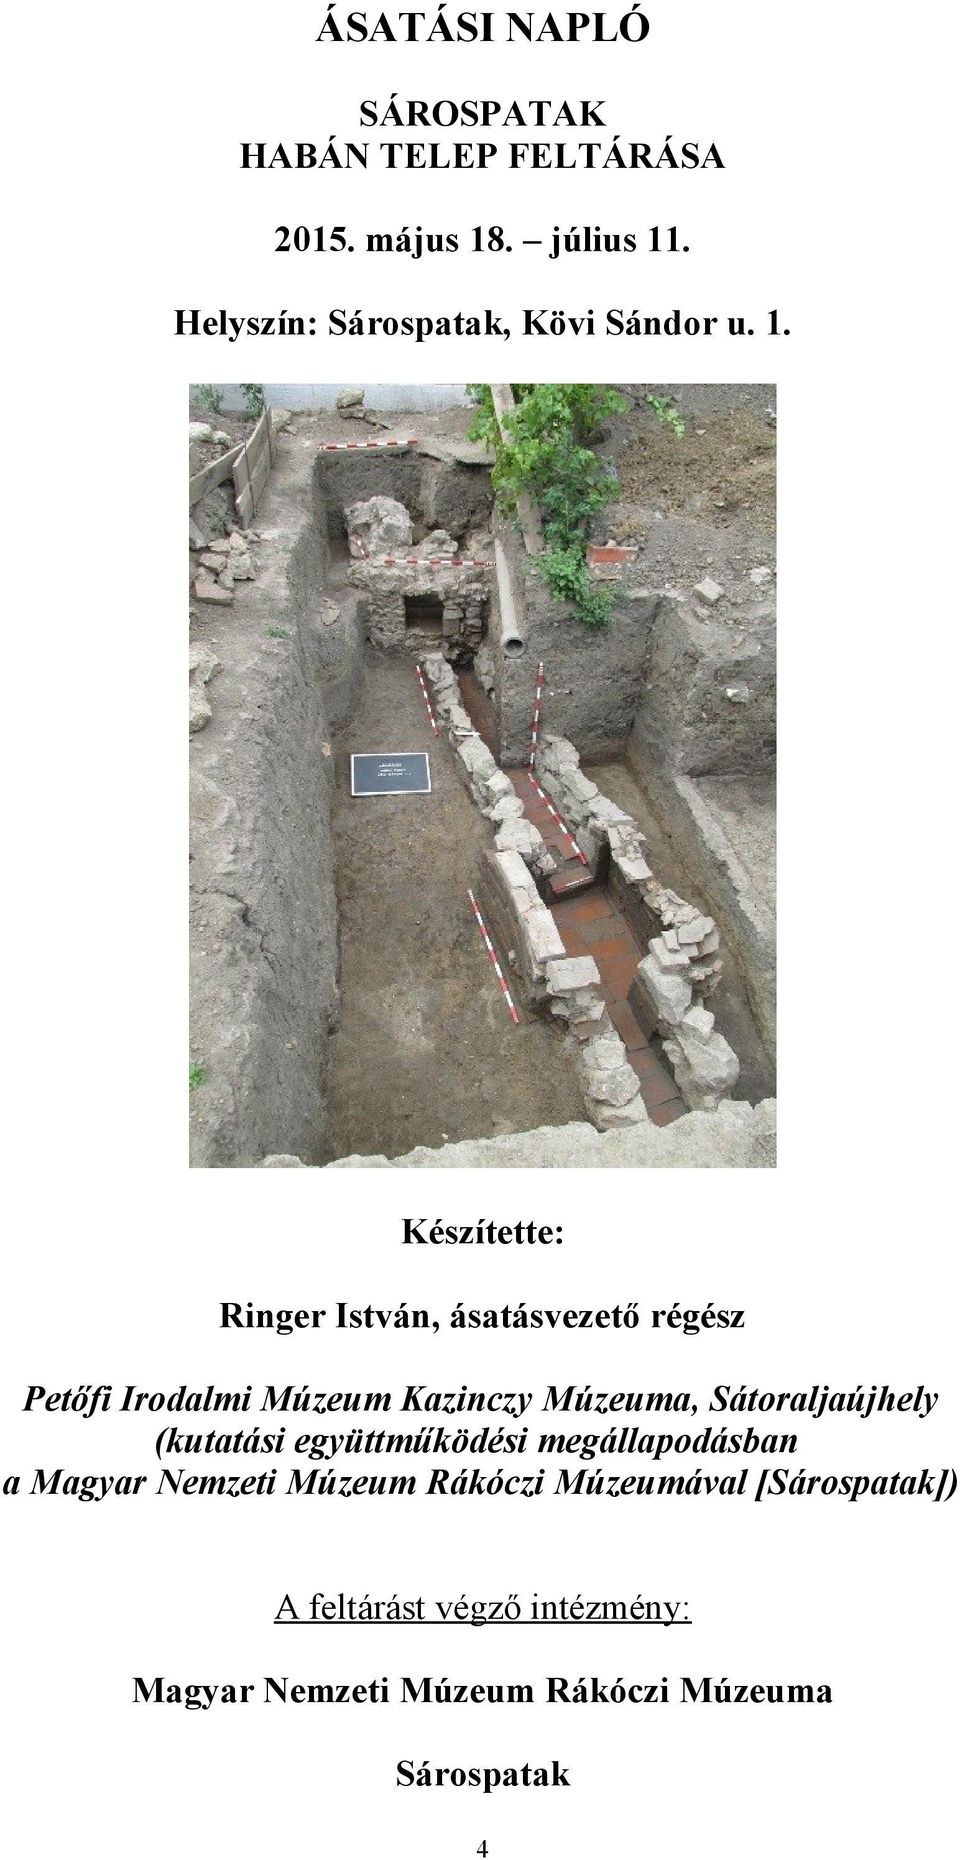 Készítette: Ringer István, ásatásvezető régész Petőfi Irodalmi Múzeum Kazinczy Múzeuma,